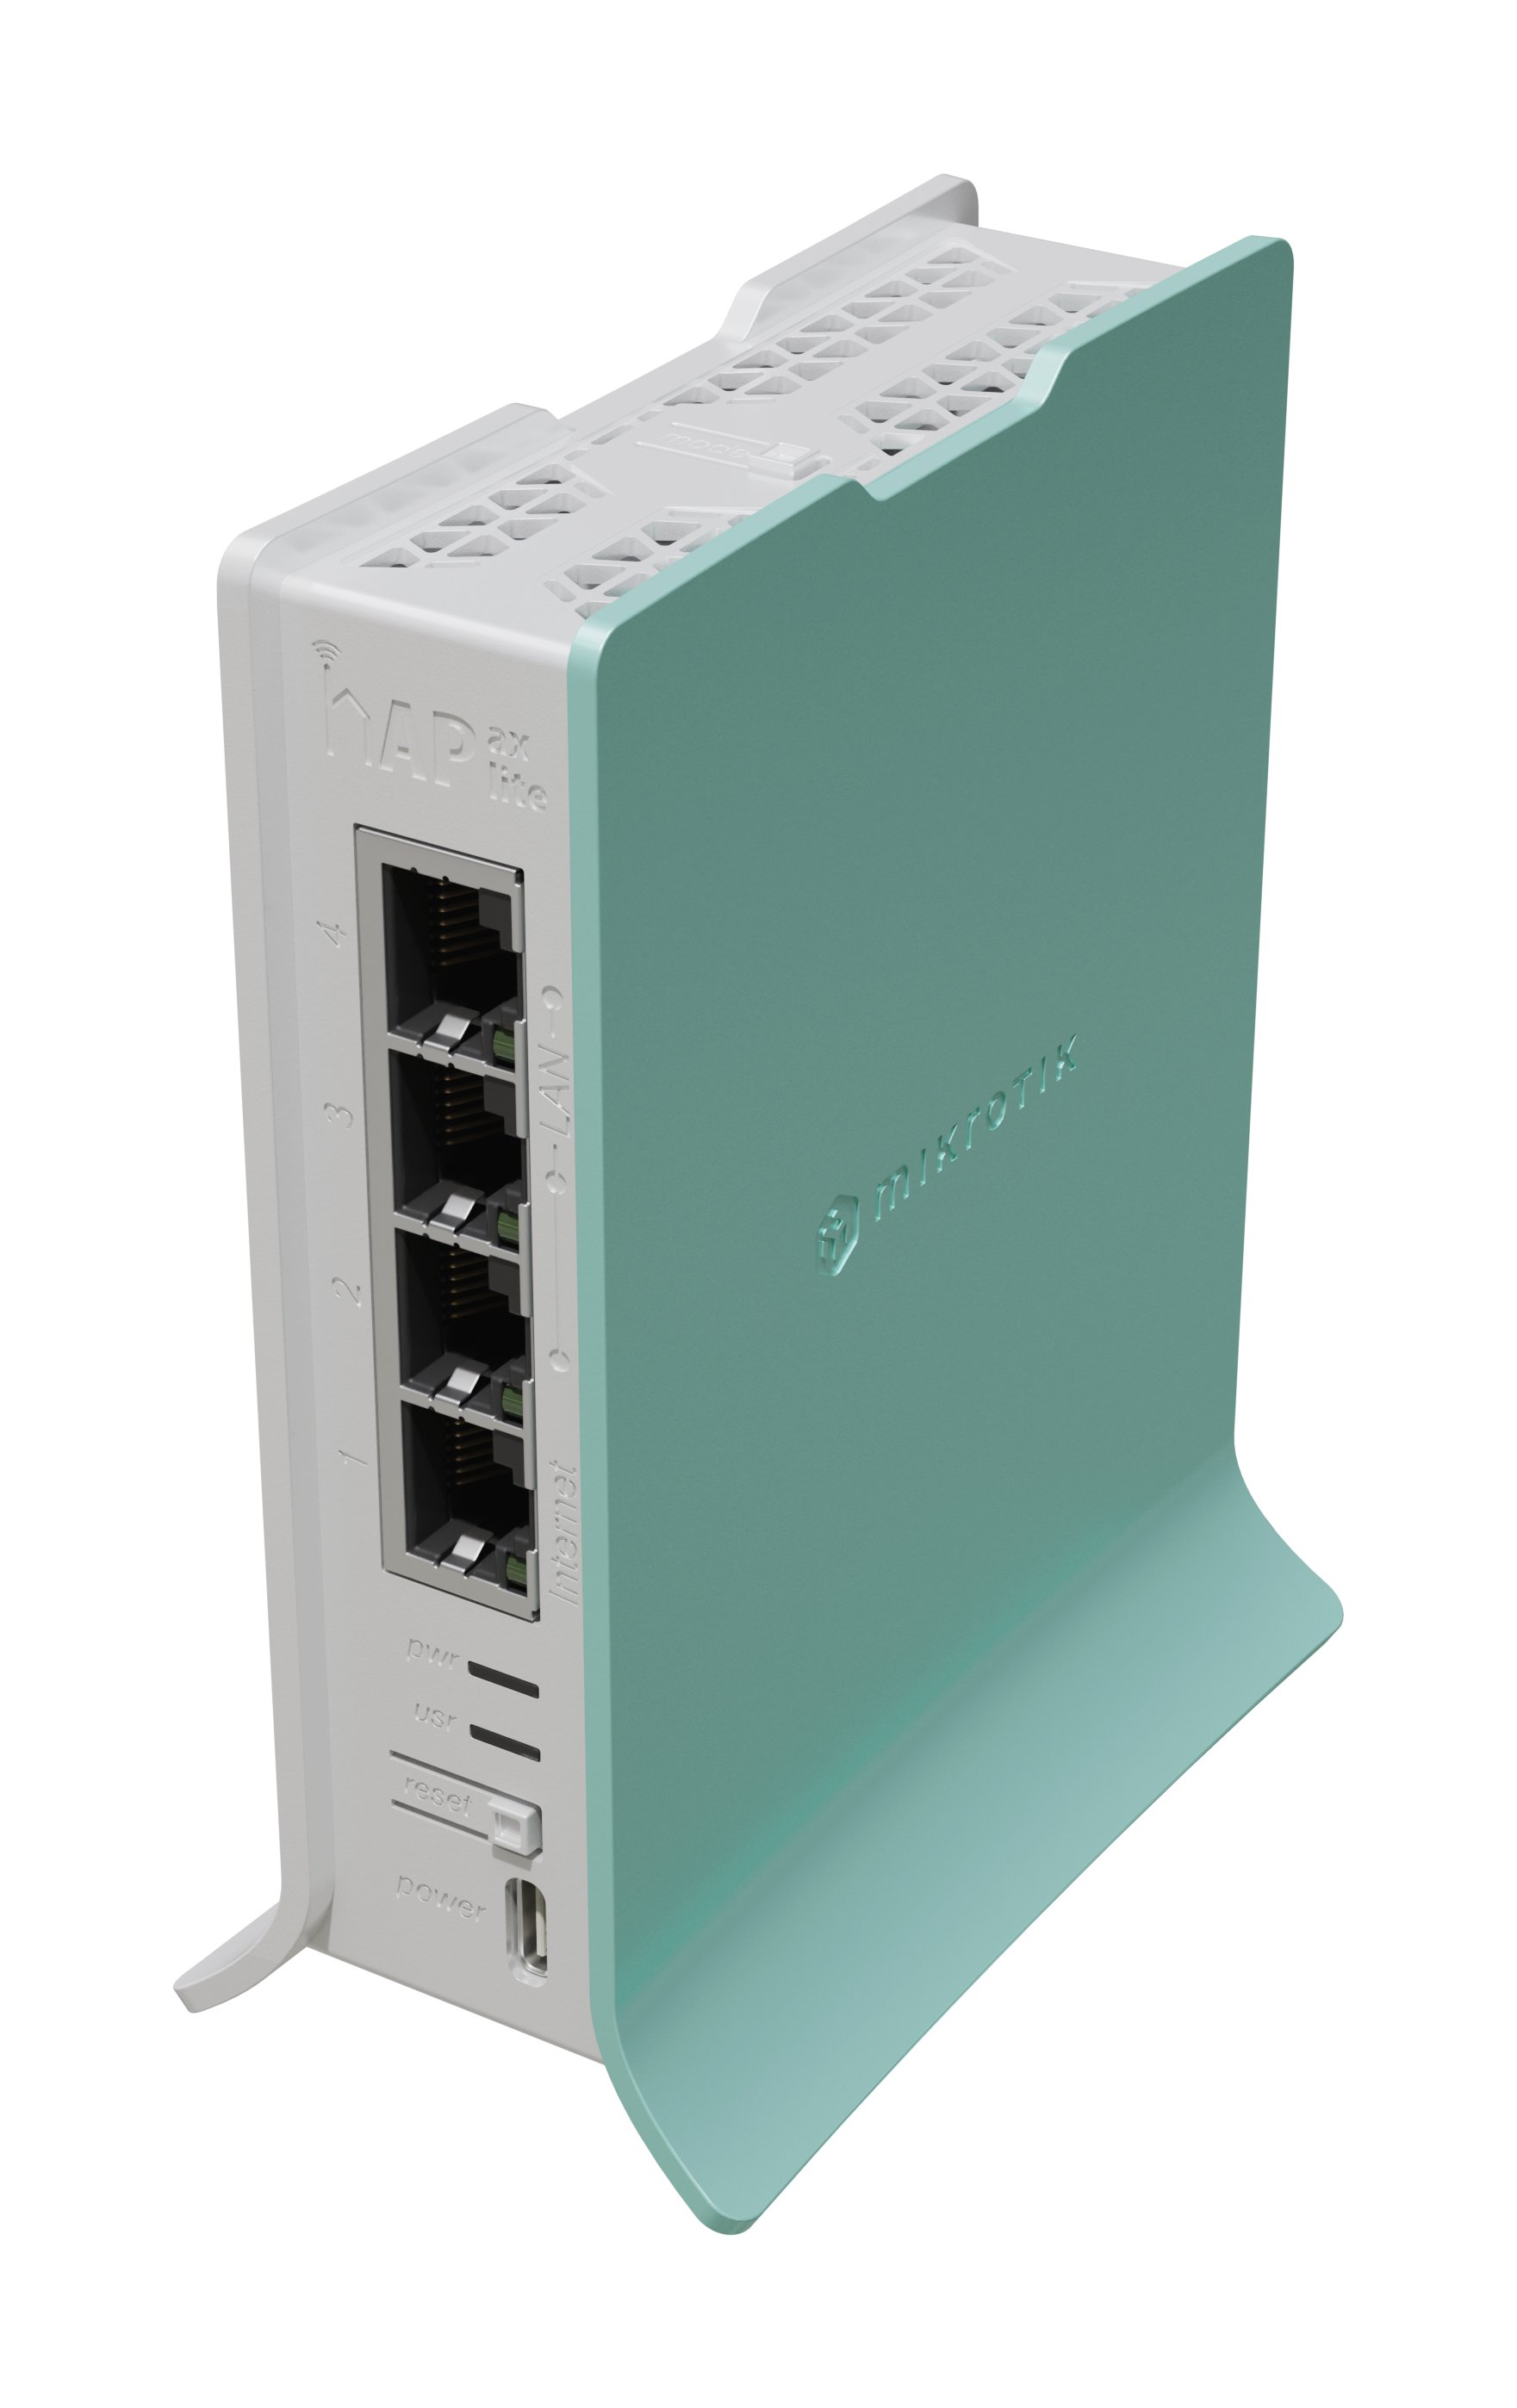 Mikrotik hap ax lite- L41G-2axD 4x Gigabit LAN ports  Wireless 2.4 GHz standards: 802.11b/g/n/ax (Wi